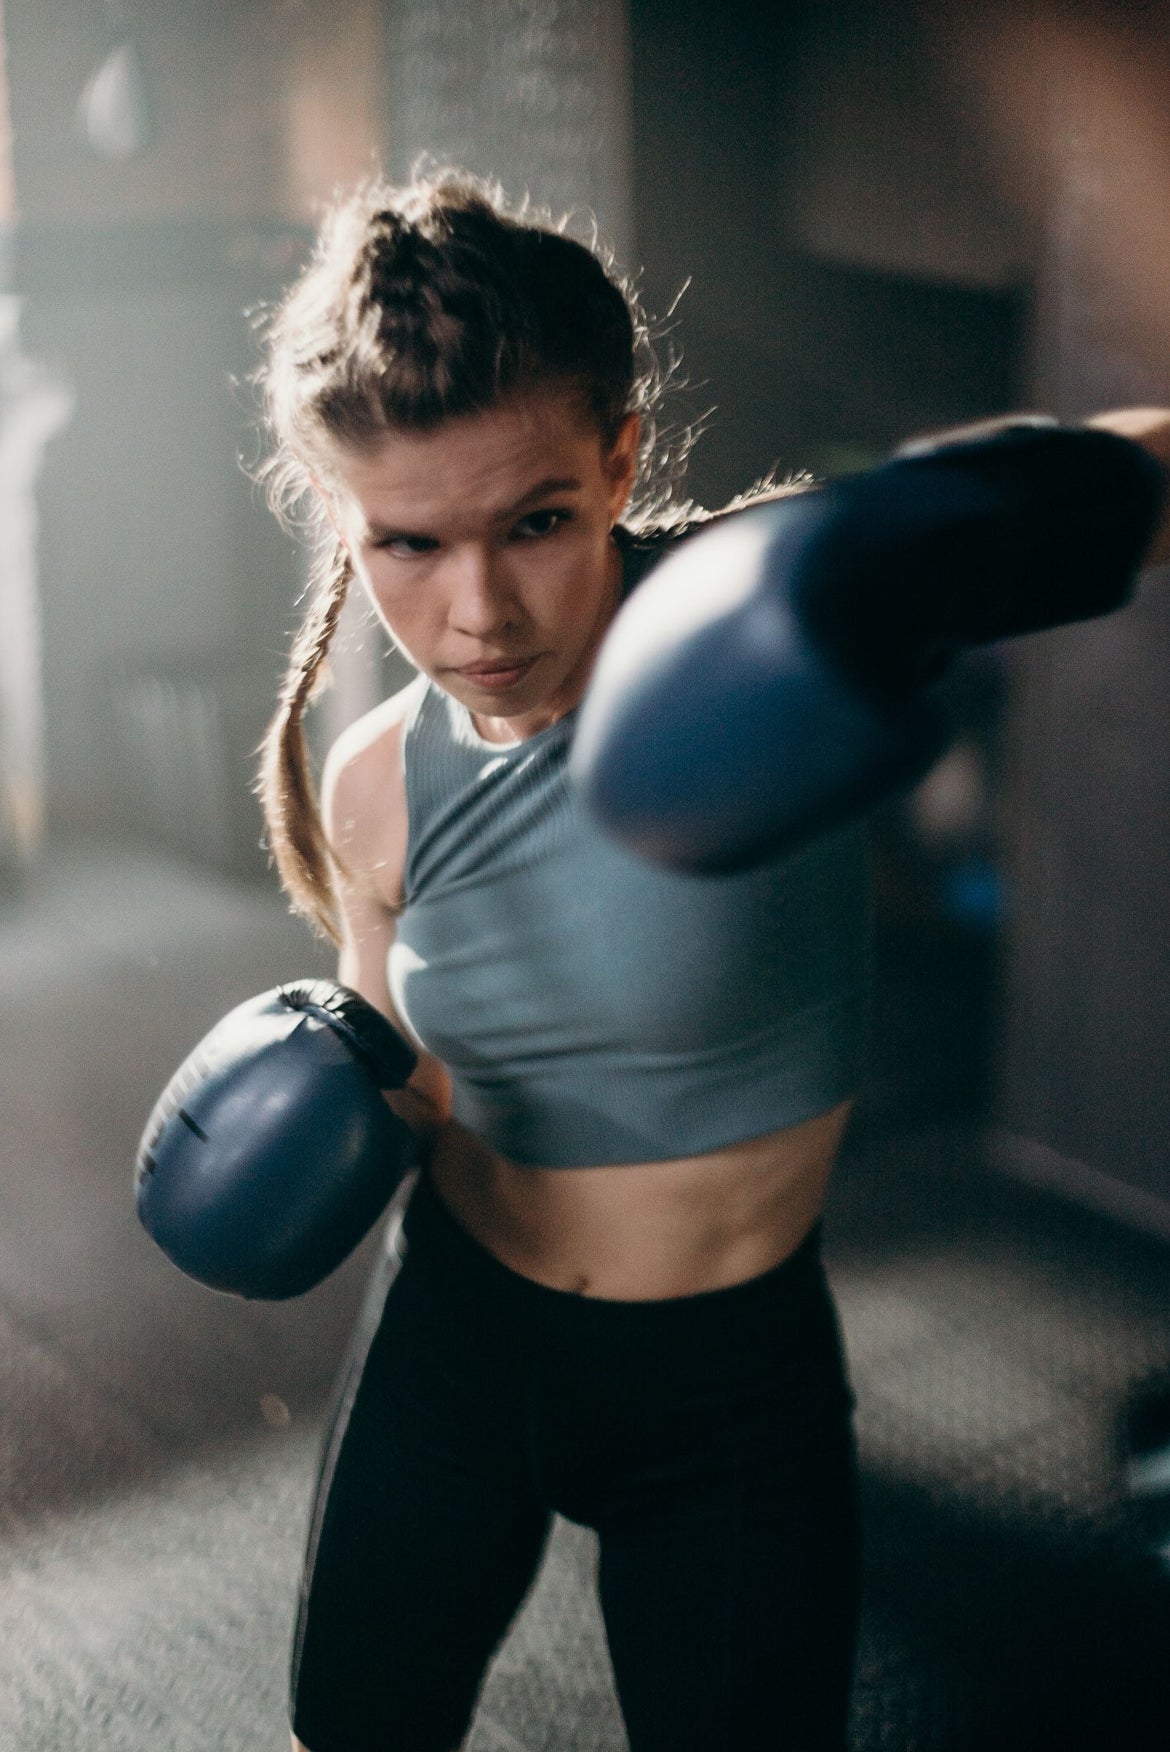 Women's Wellness Warriors: Conquering Fitness Goals